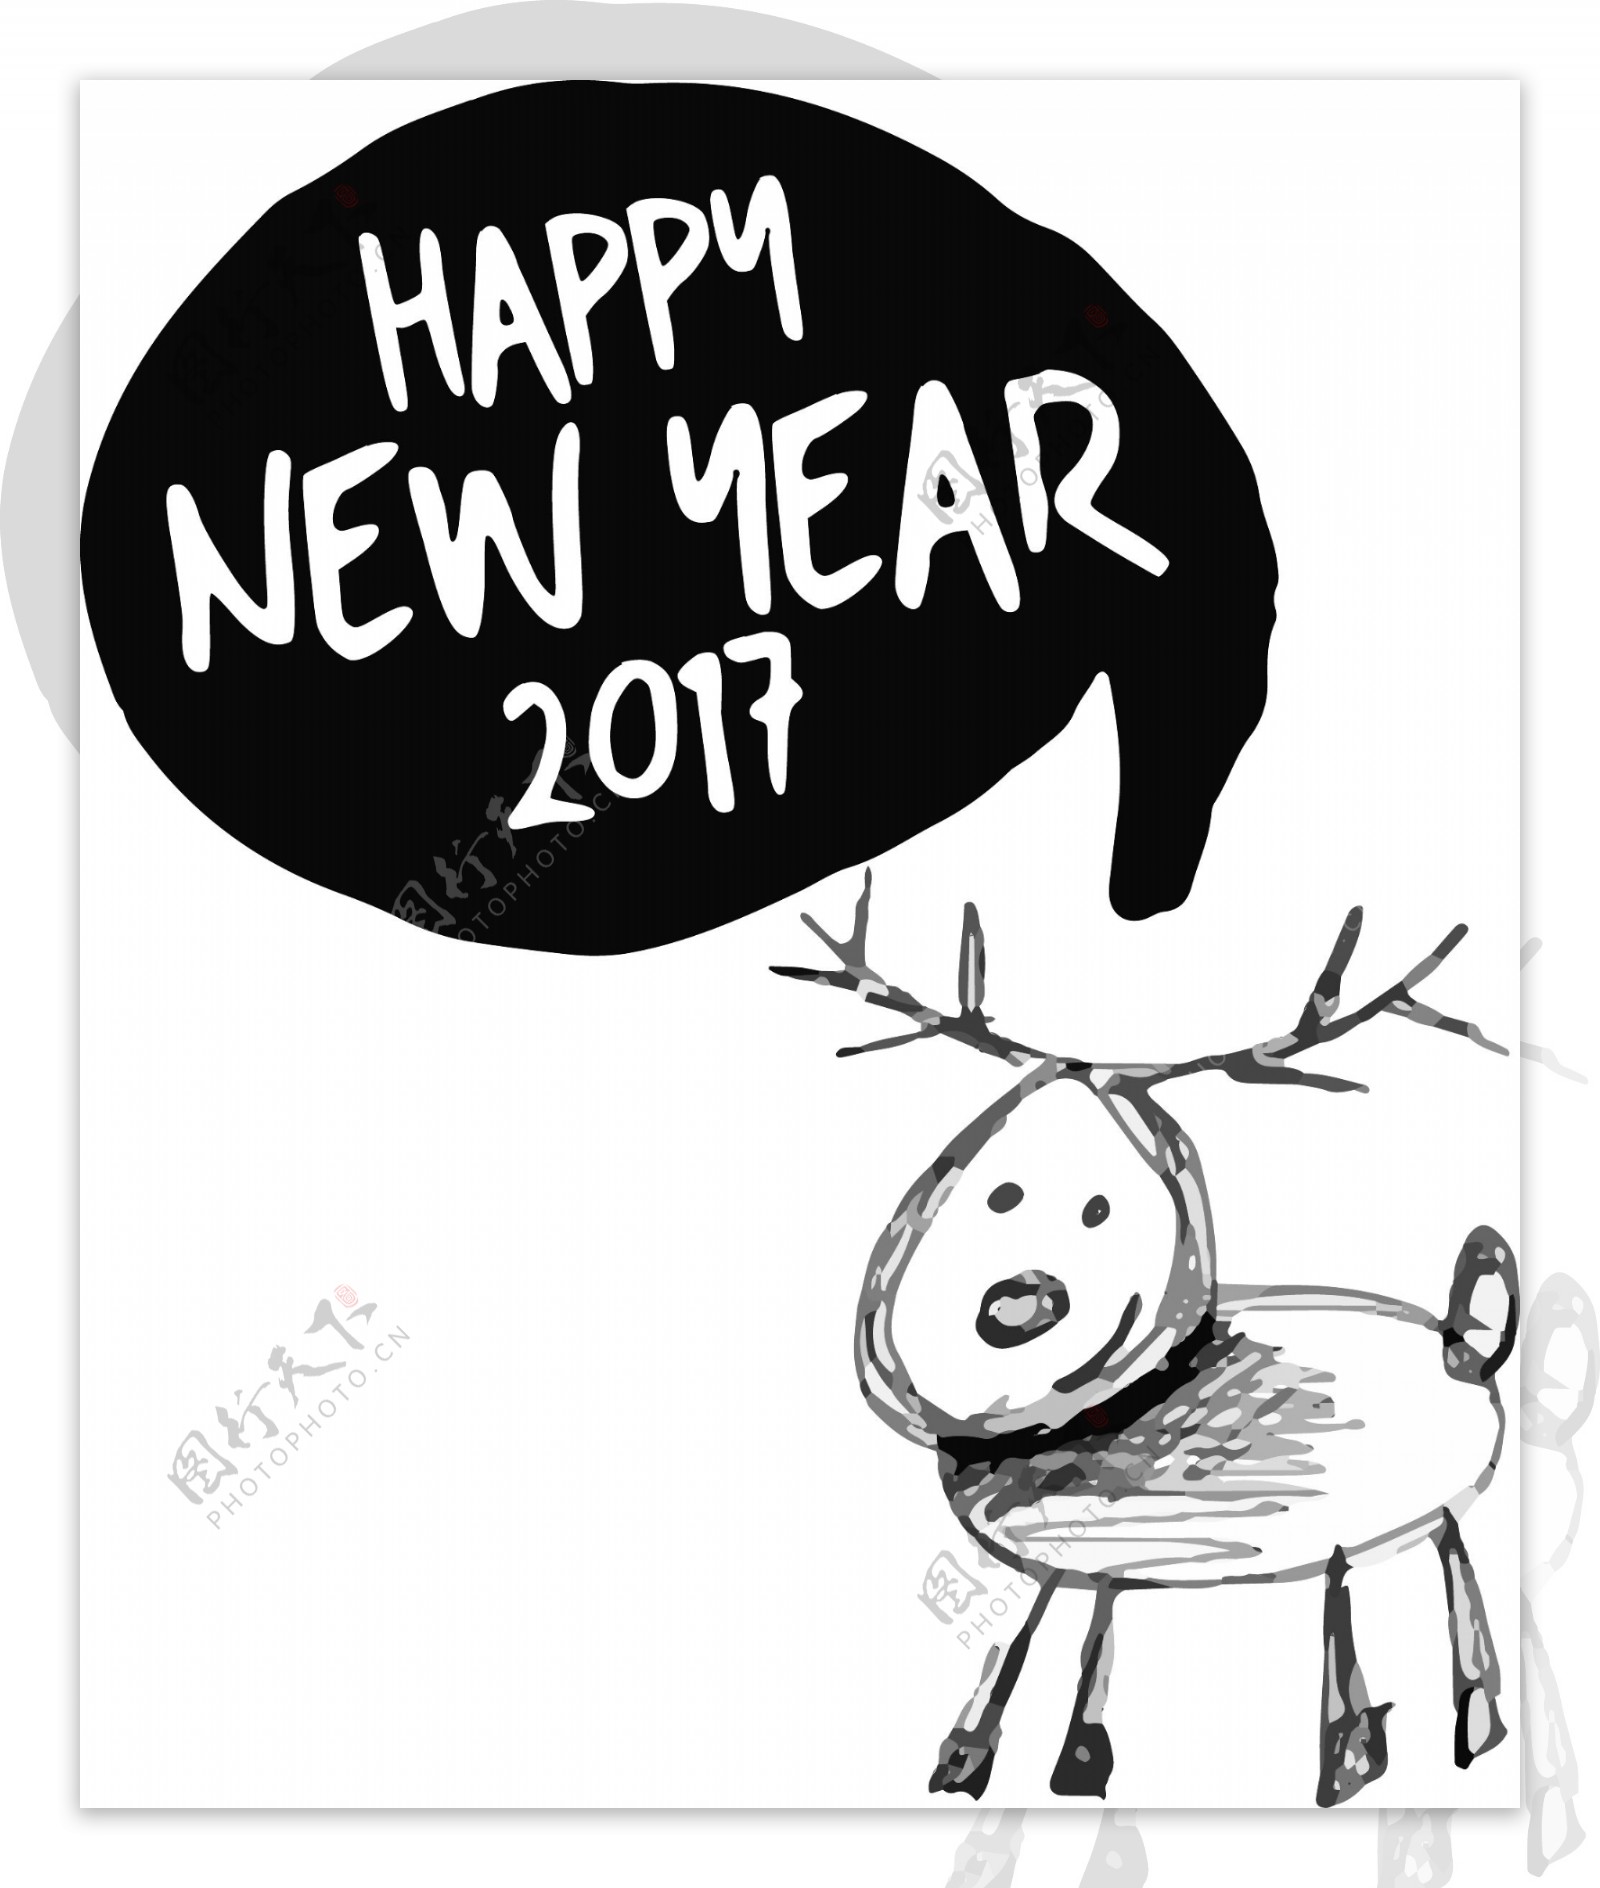 新年快乐卡通矢量图标素材